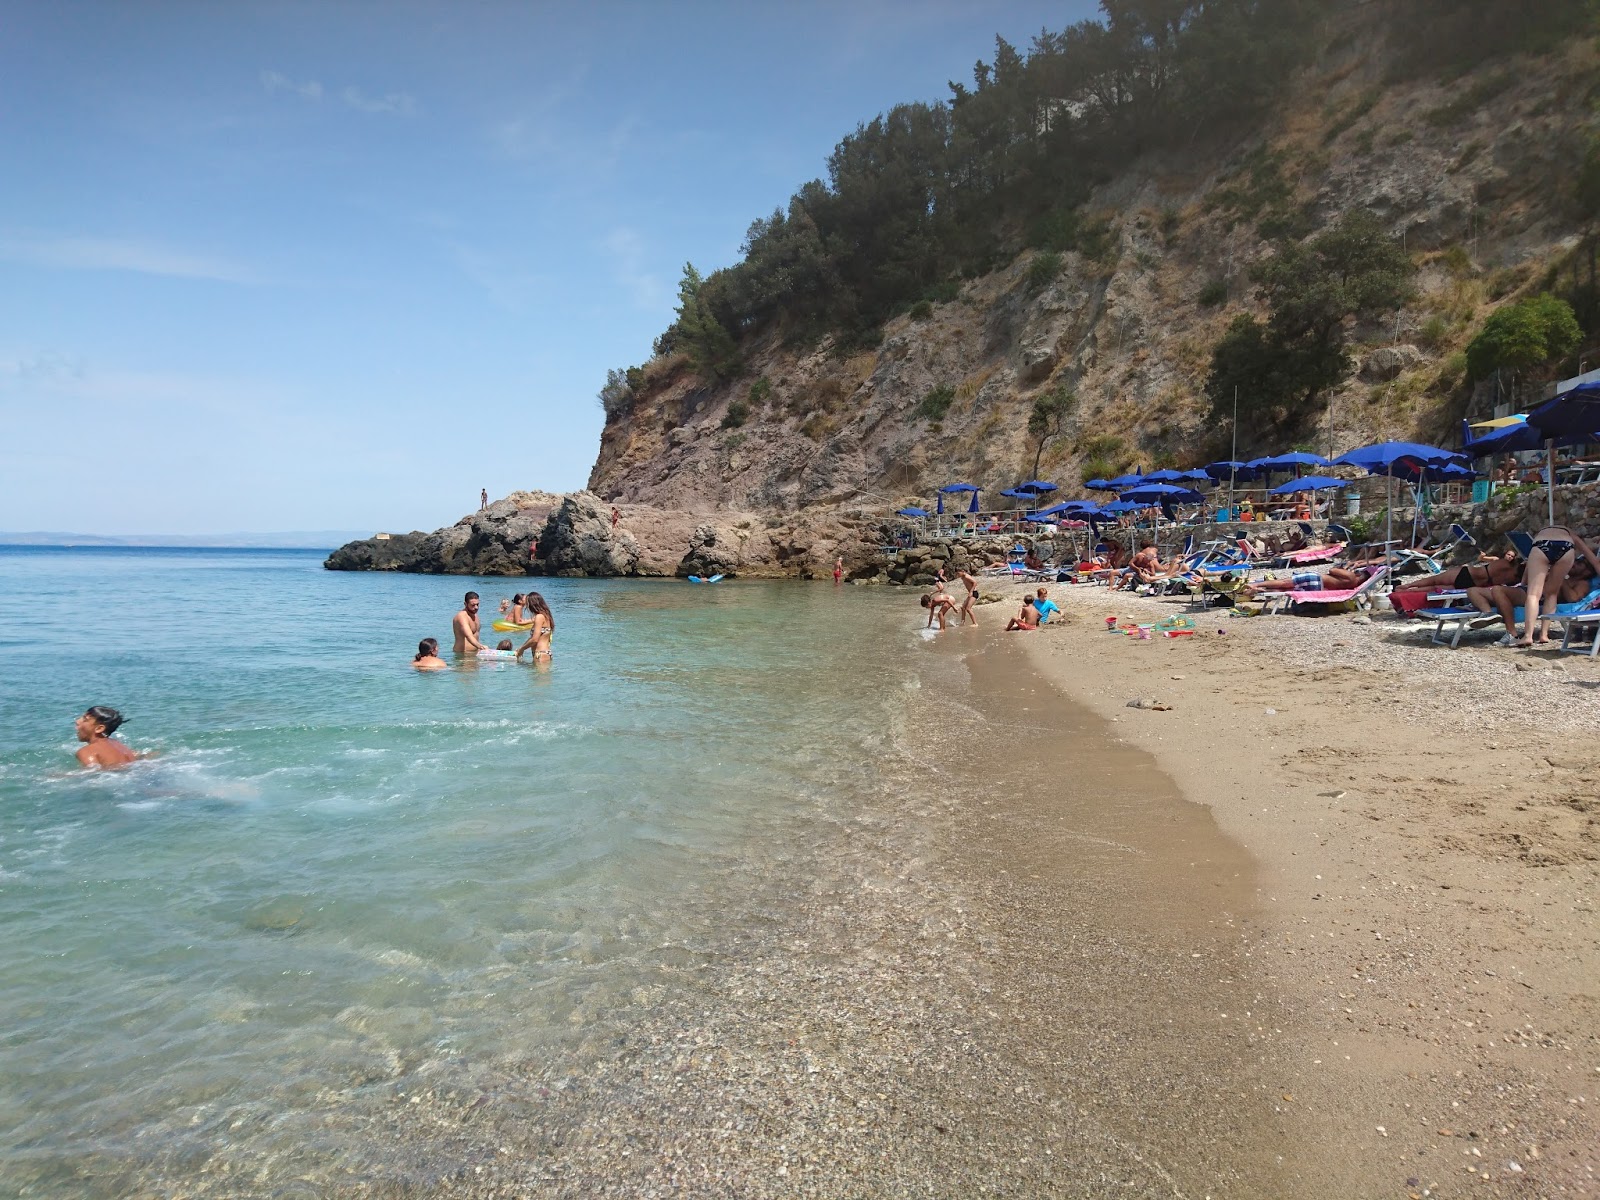 Photo of Spiaggia La Cantoniera with small bay